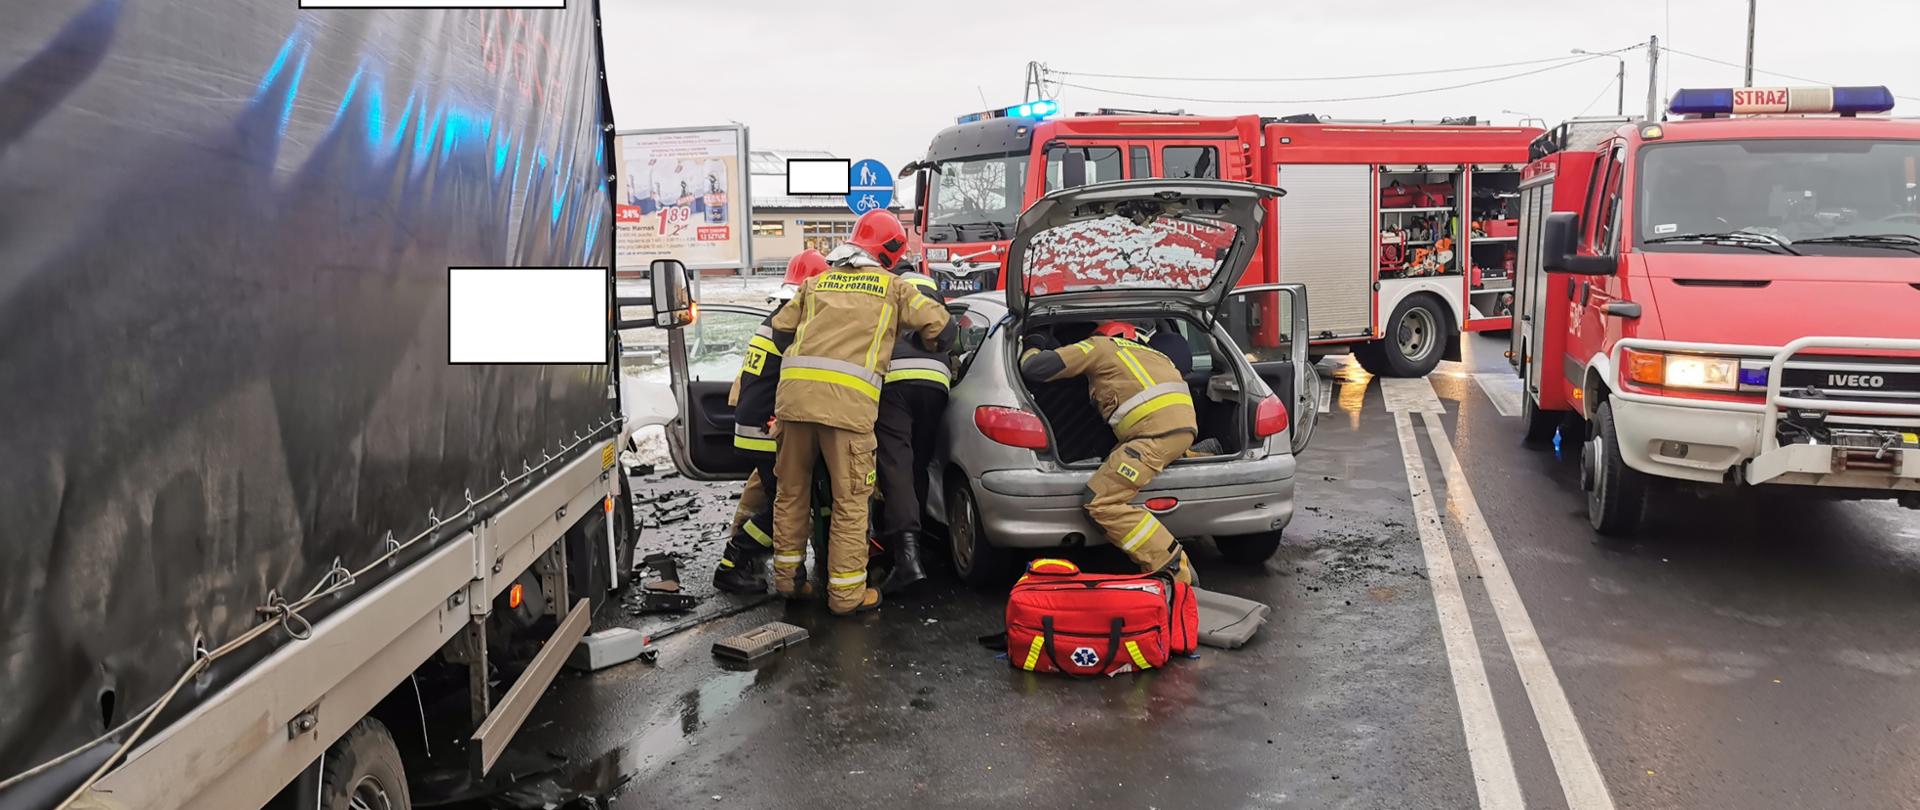 Zdjęcie przedstawia 4 strażaków podczas wypadku, próbujących dostać się do osoby poszkodowanej w pojeździe, na drodze stoi samochód dostawczy i osobowy a w tle dwa auta bojowe straży pożarnej